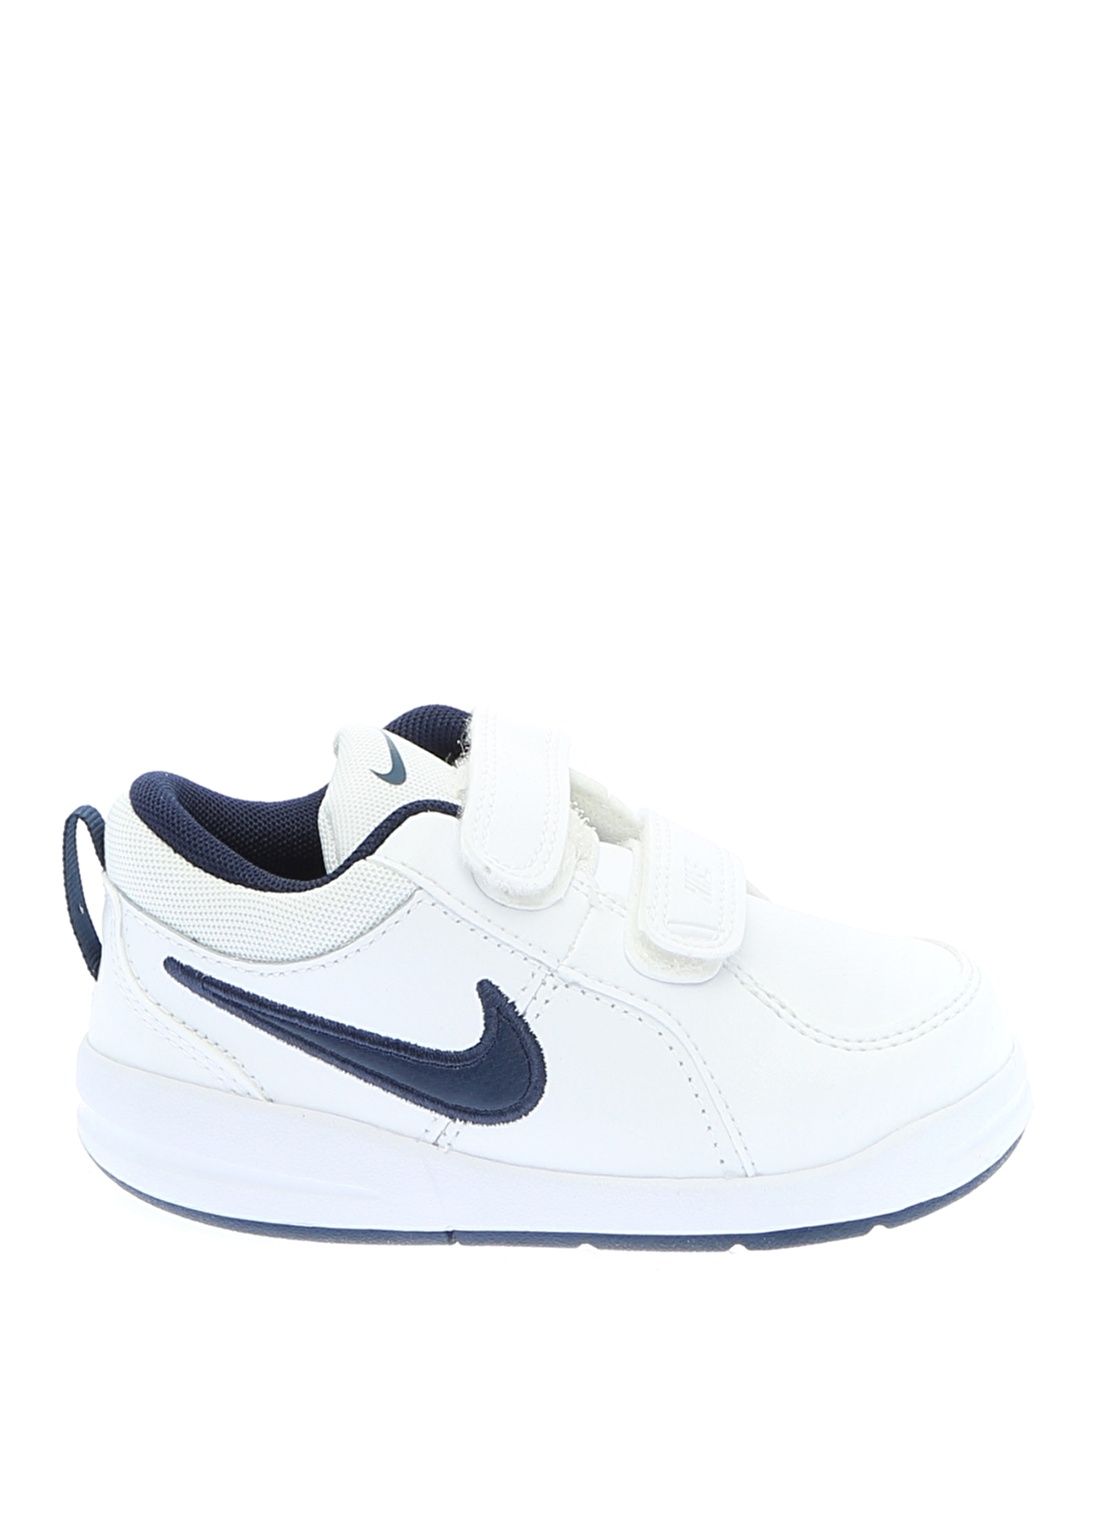 Nike Pico 4 454501-101 Yürüyüş Ayakkabısı